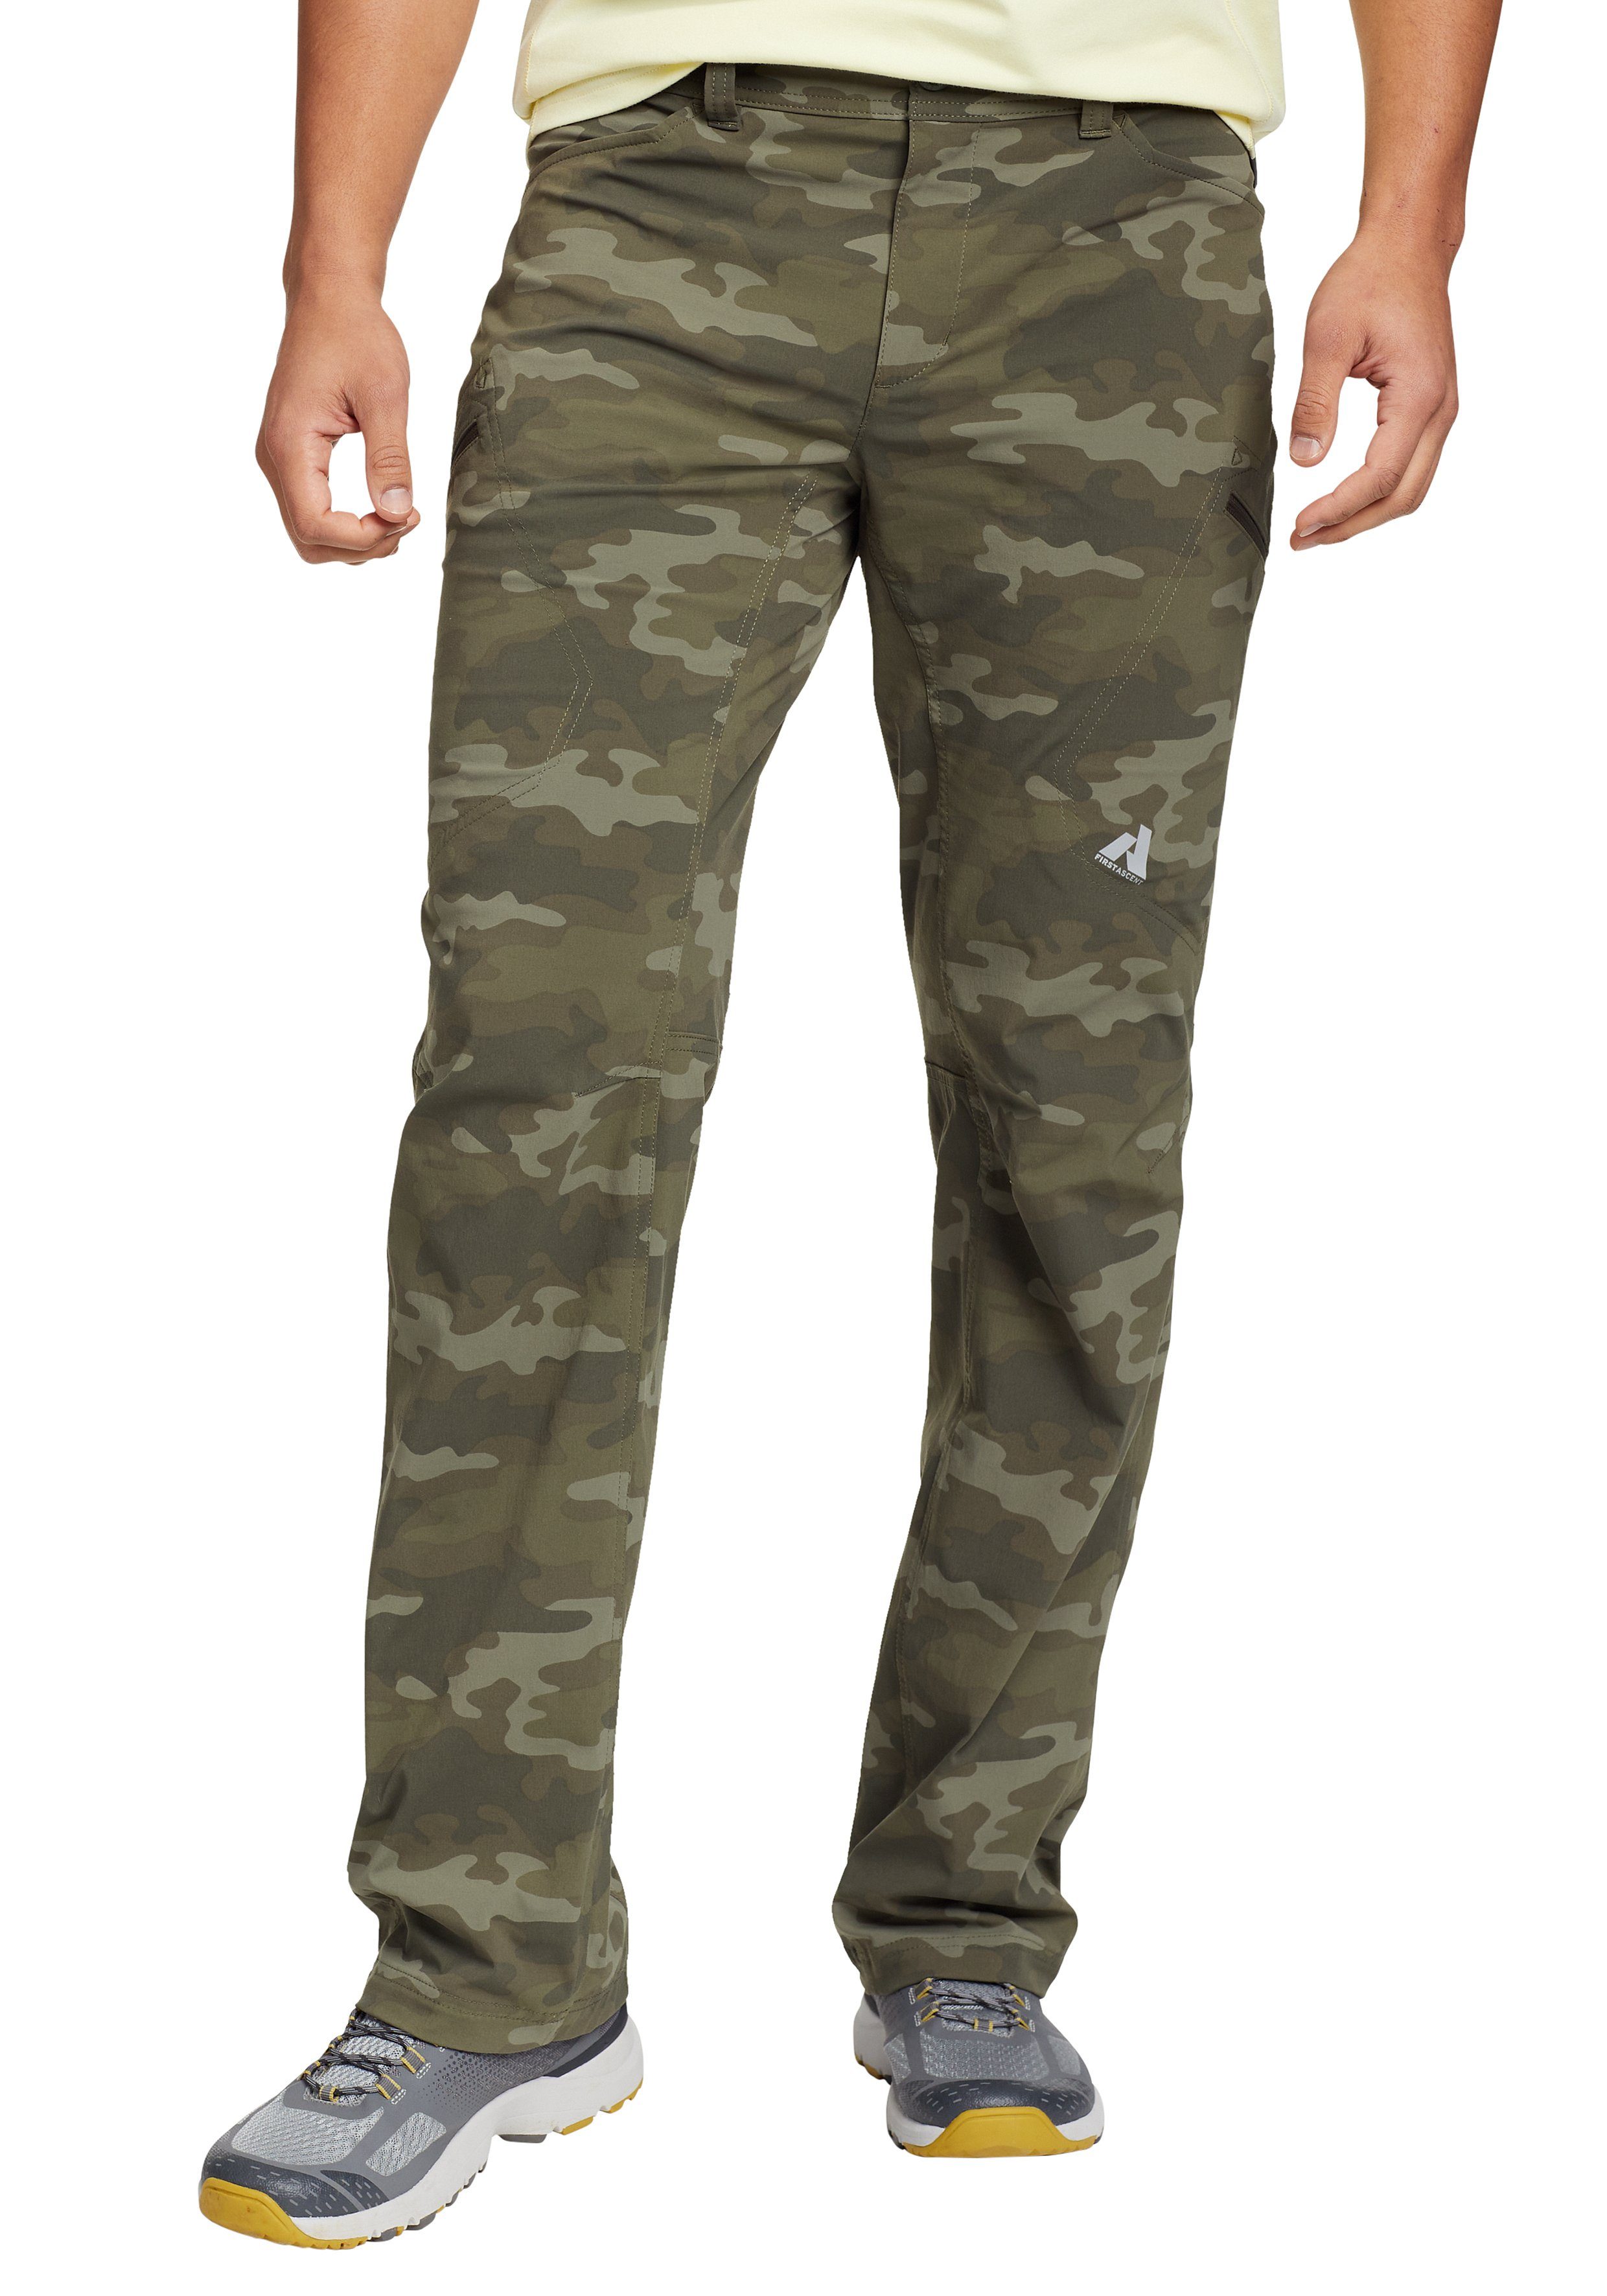 Eddie Bauer Trekkinghose Guide Pro atmungsaktiv und wasserabweisend mit seitlicher Sicherheitstasche Camouflage